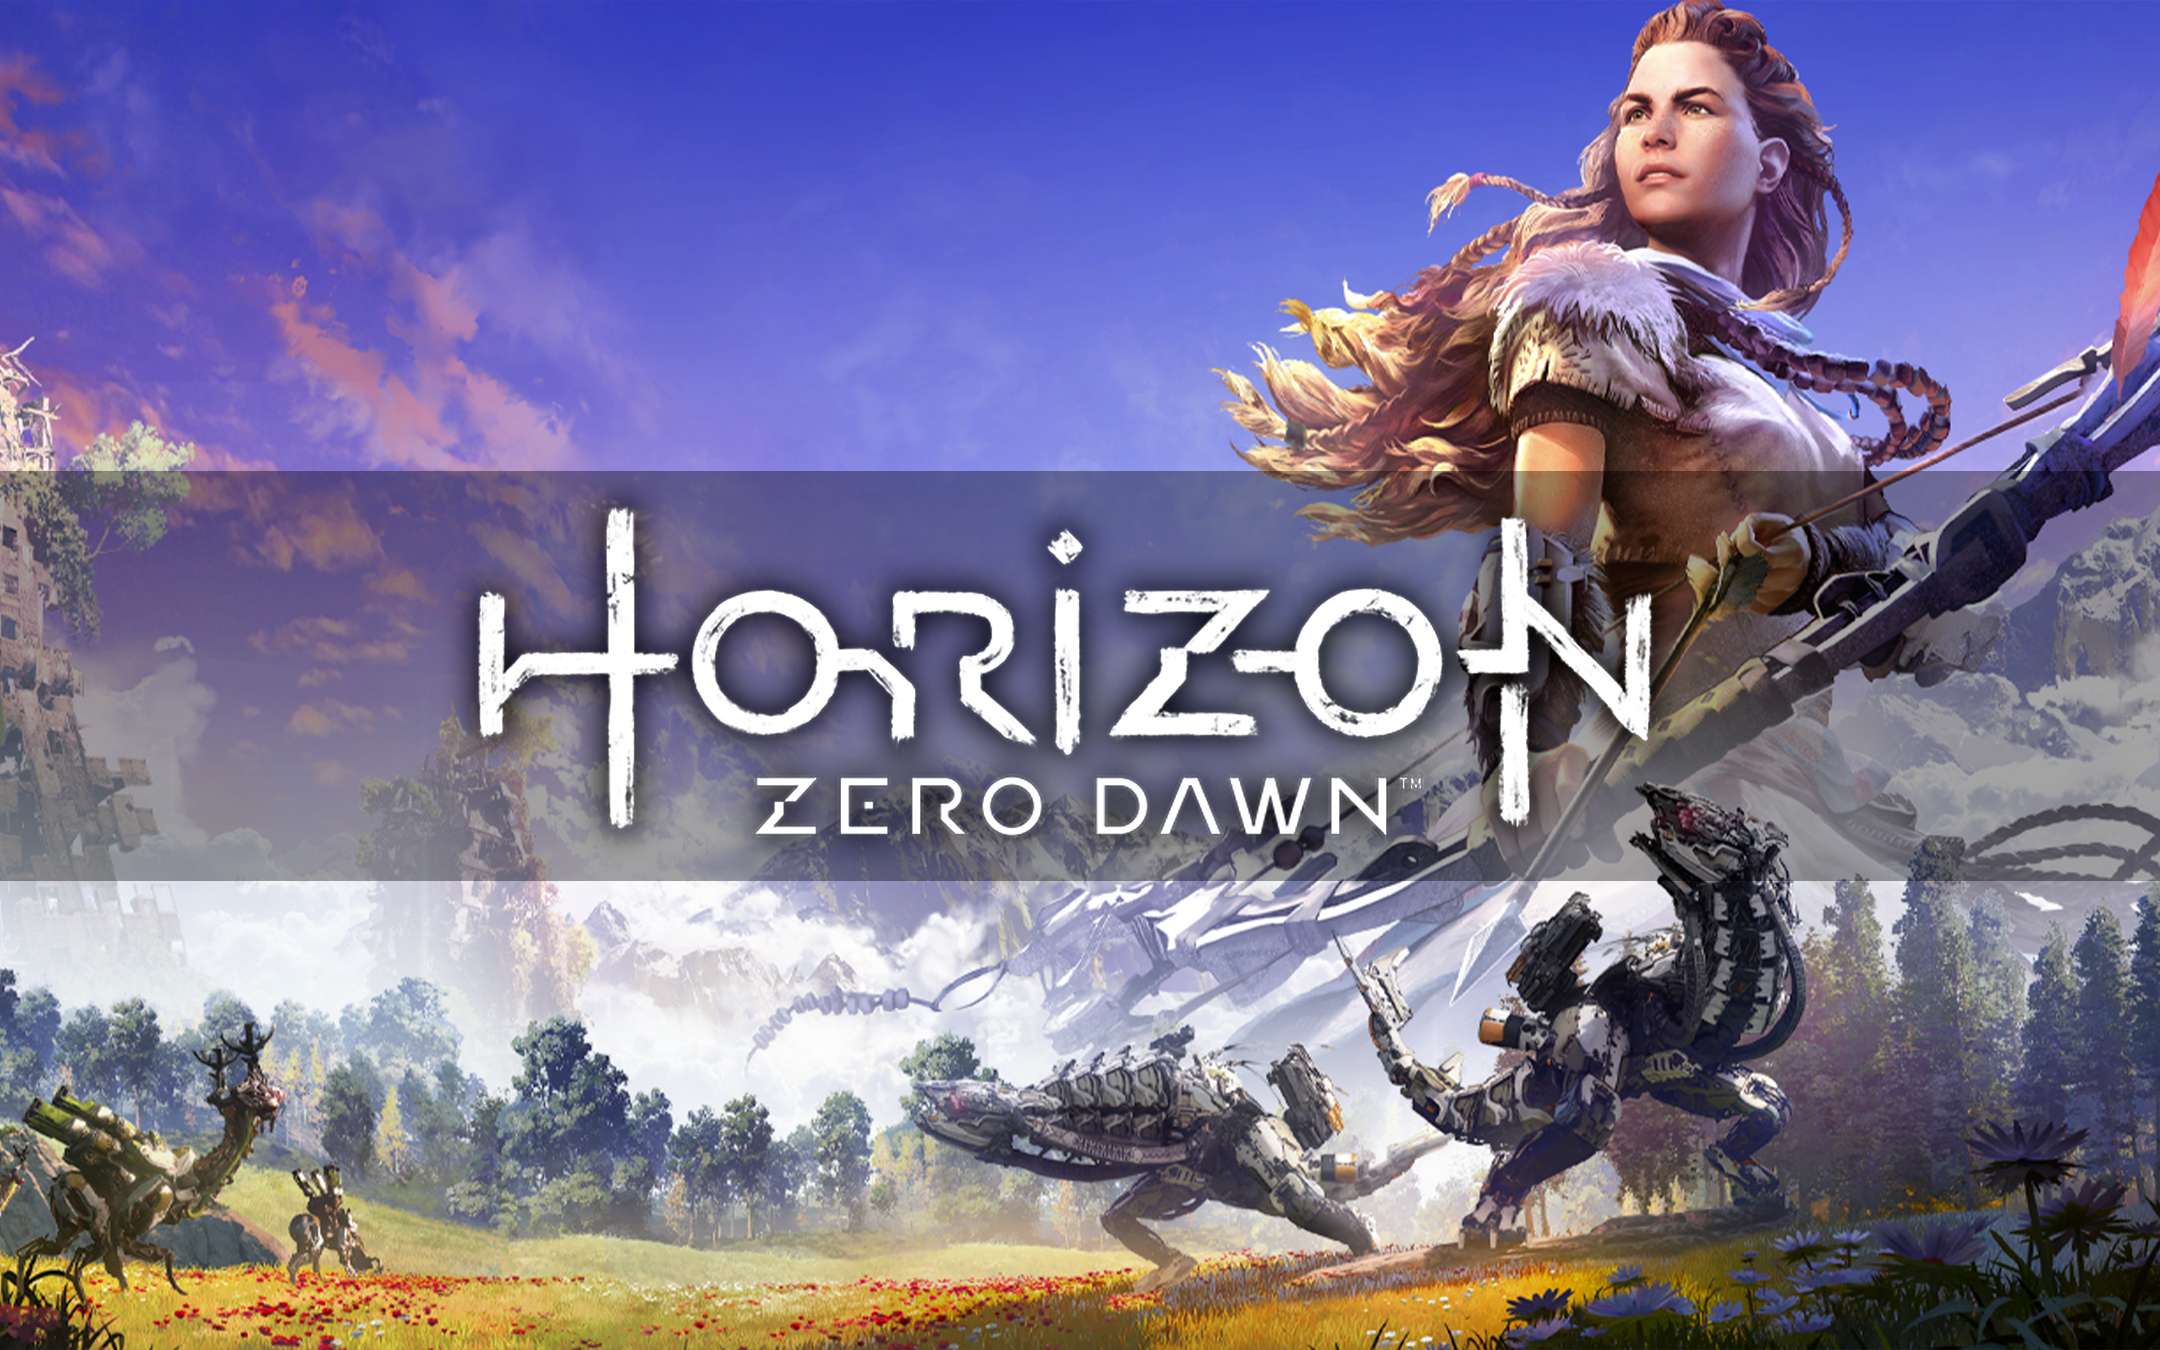 Horizon Zero Dawn gratis su PS4 e PS5 da domani, ecco come